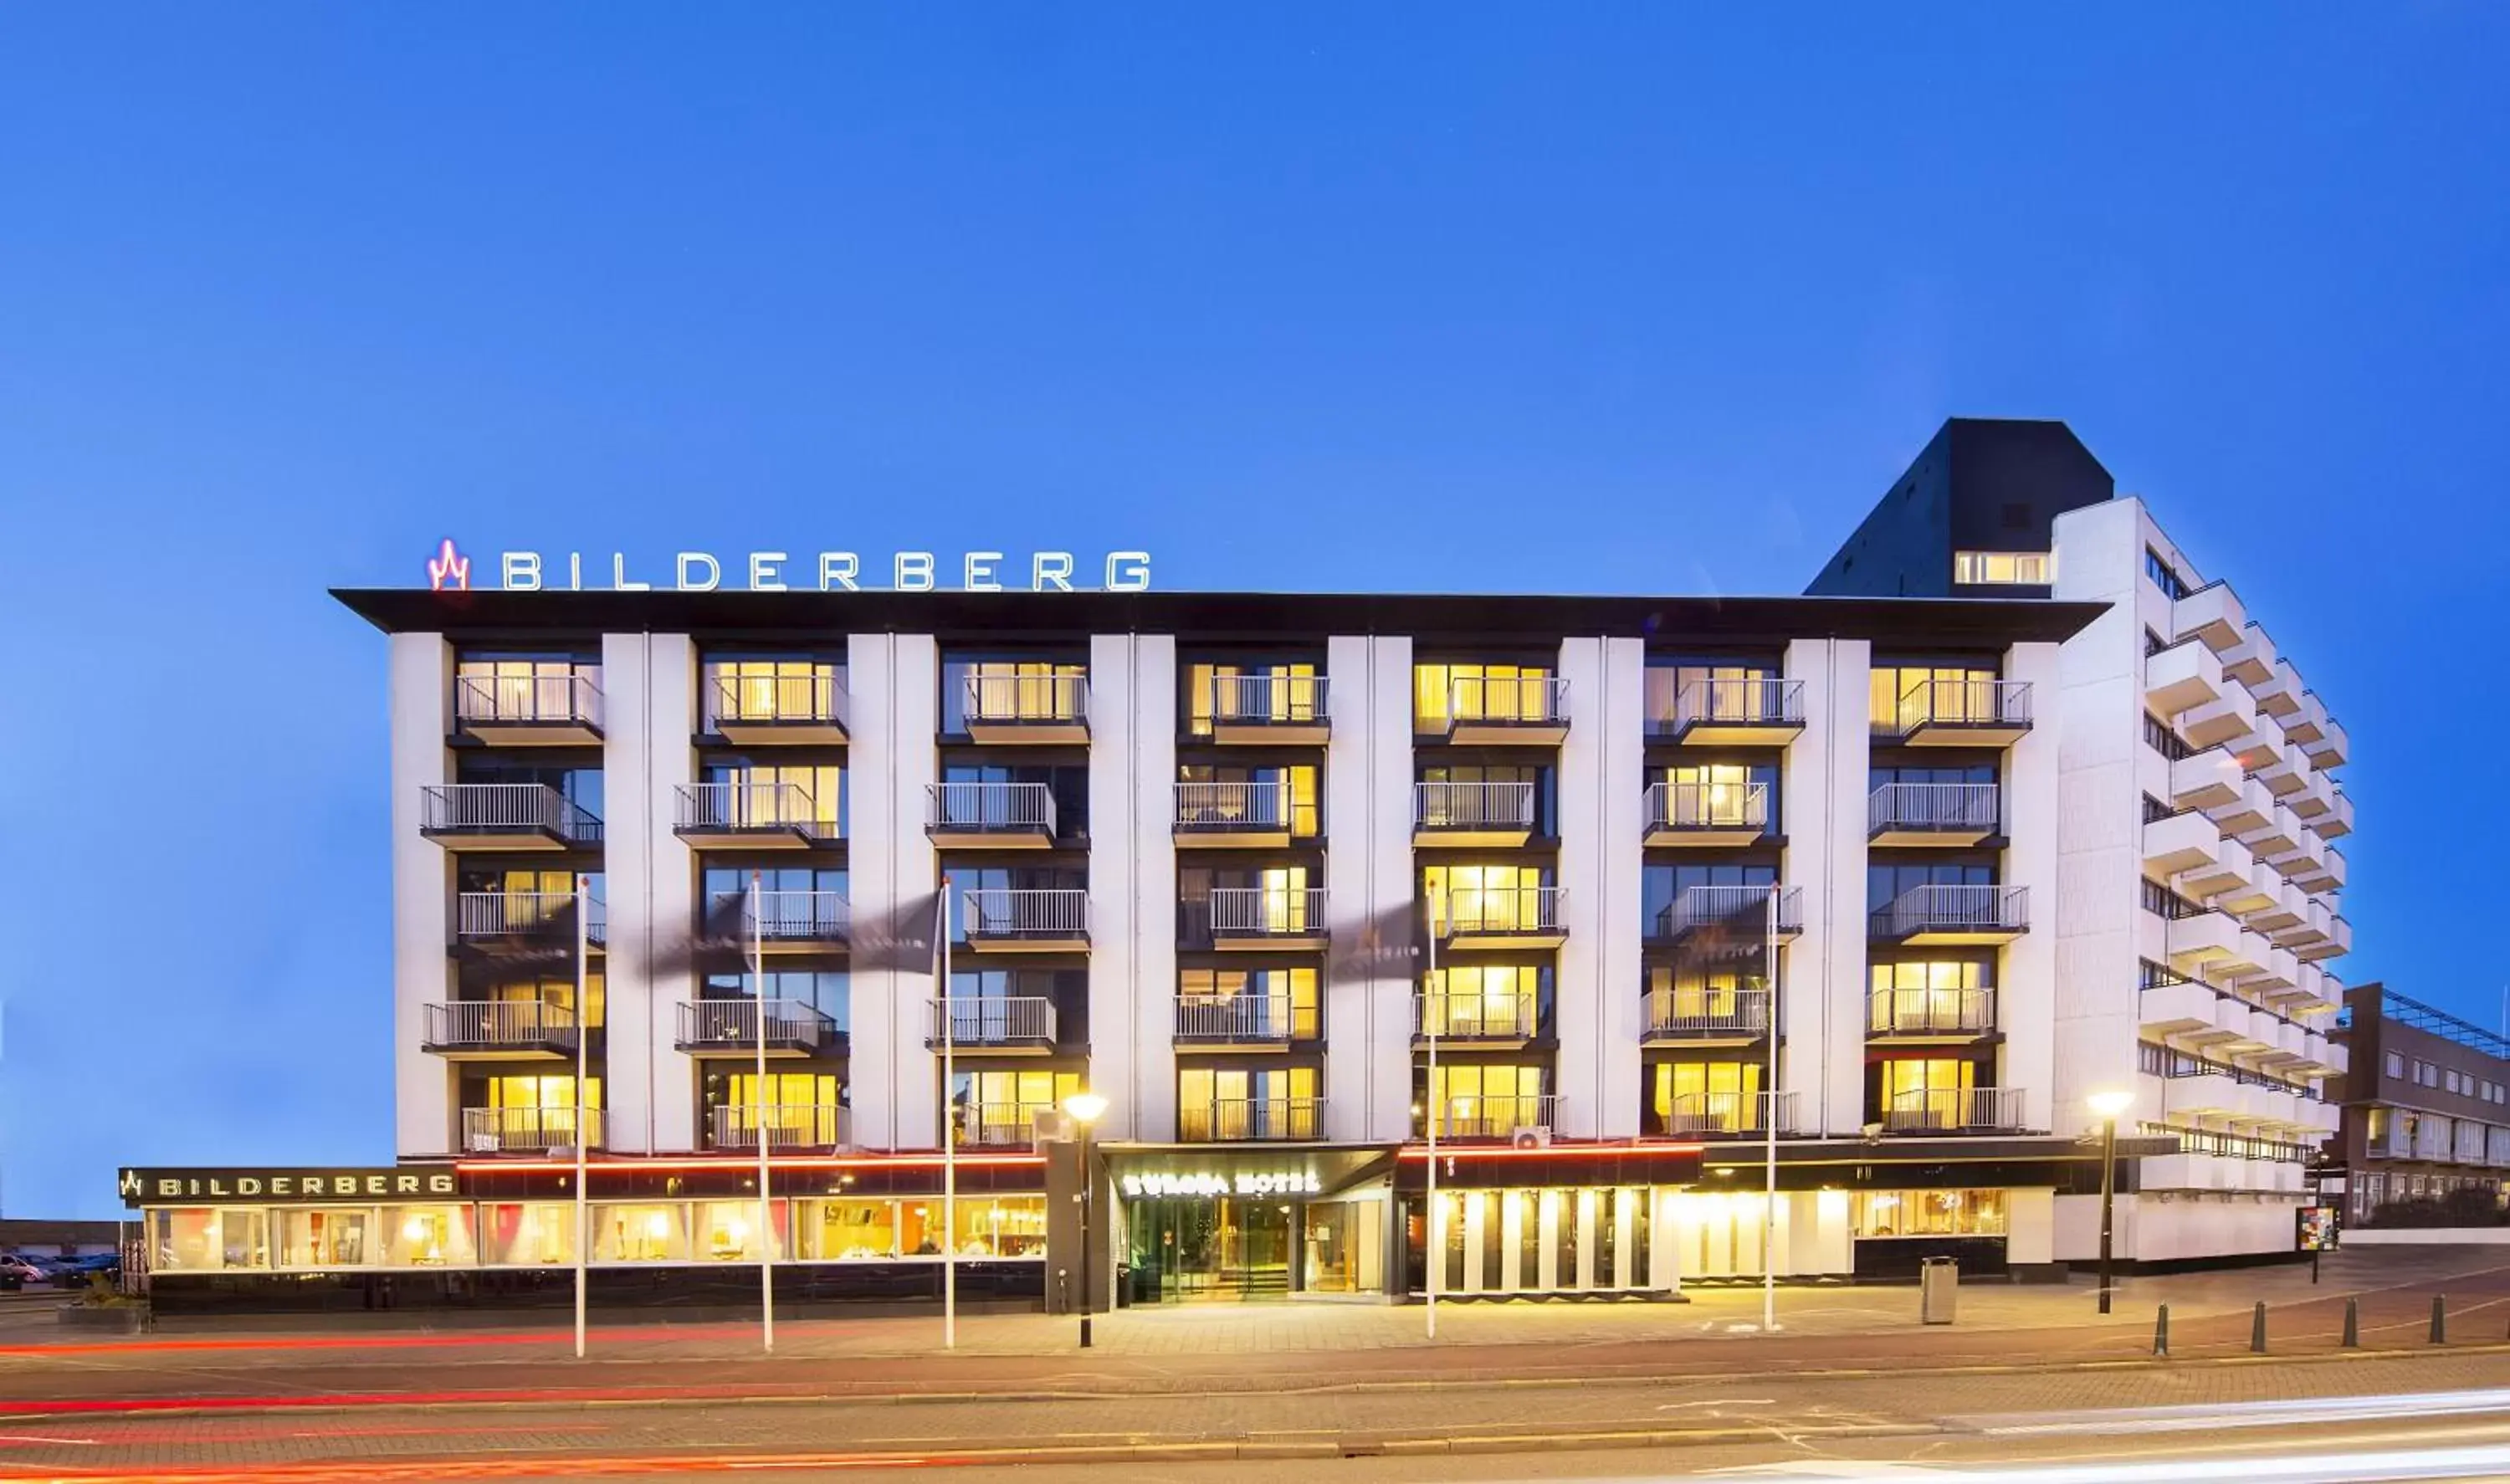 Property building in Bilderberg Europa Hotel Scheveningen